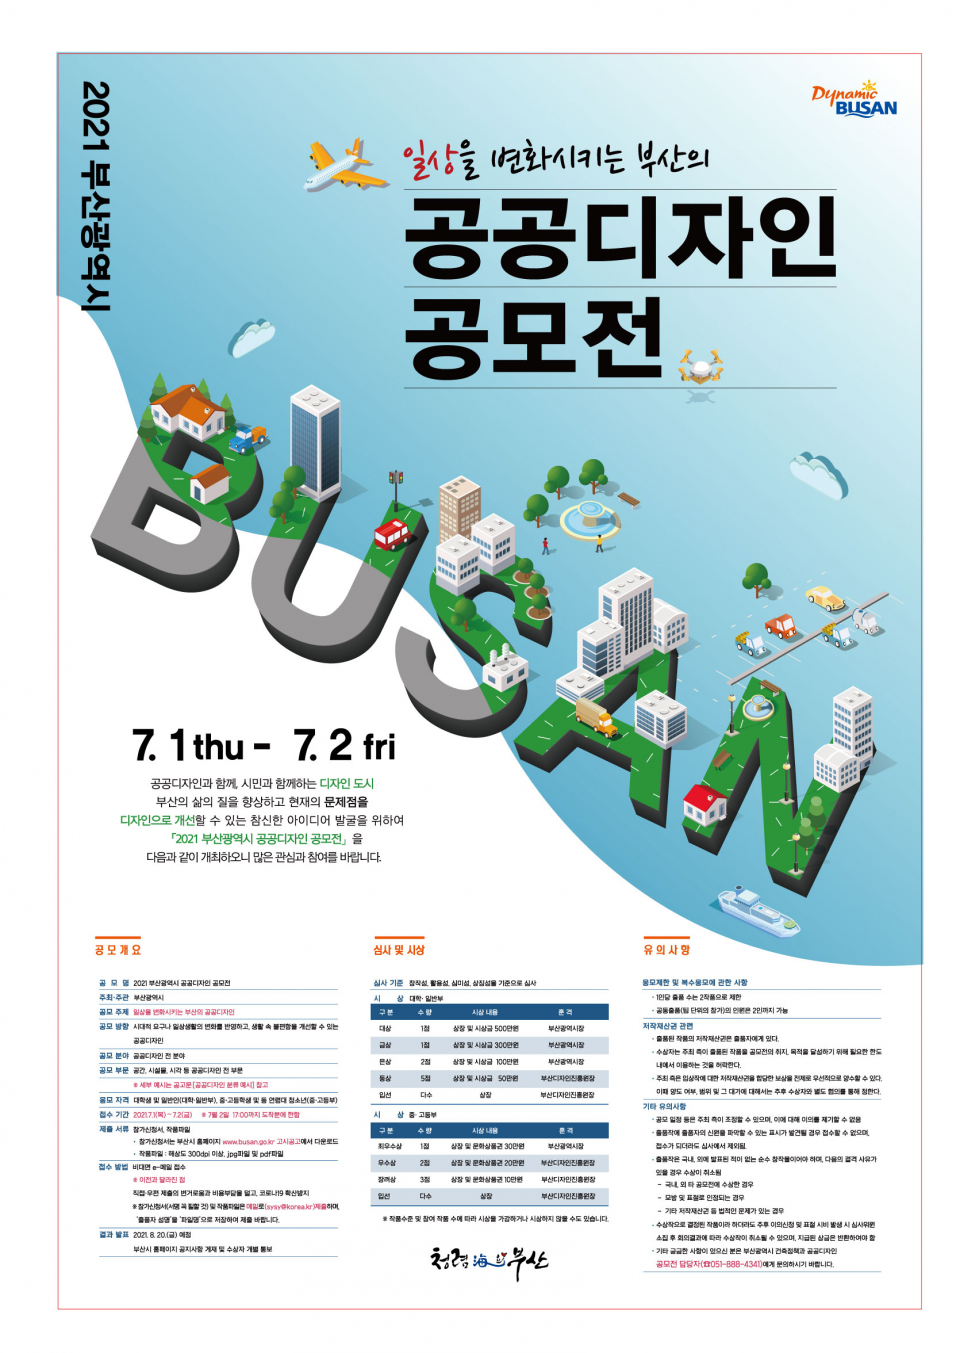 2021 부산광역시 공공디자인 공모전 참여 안내